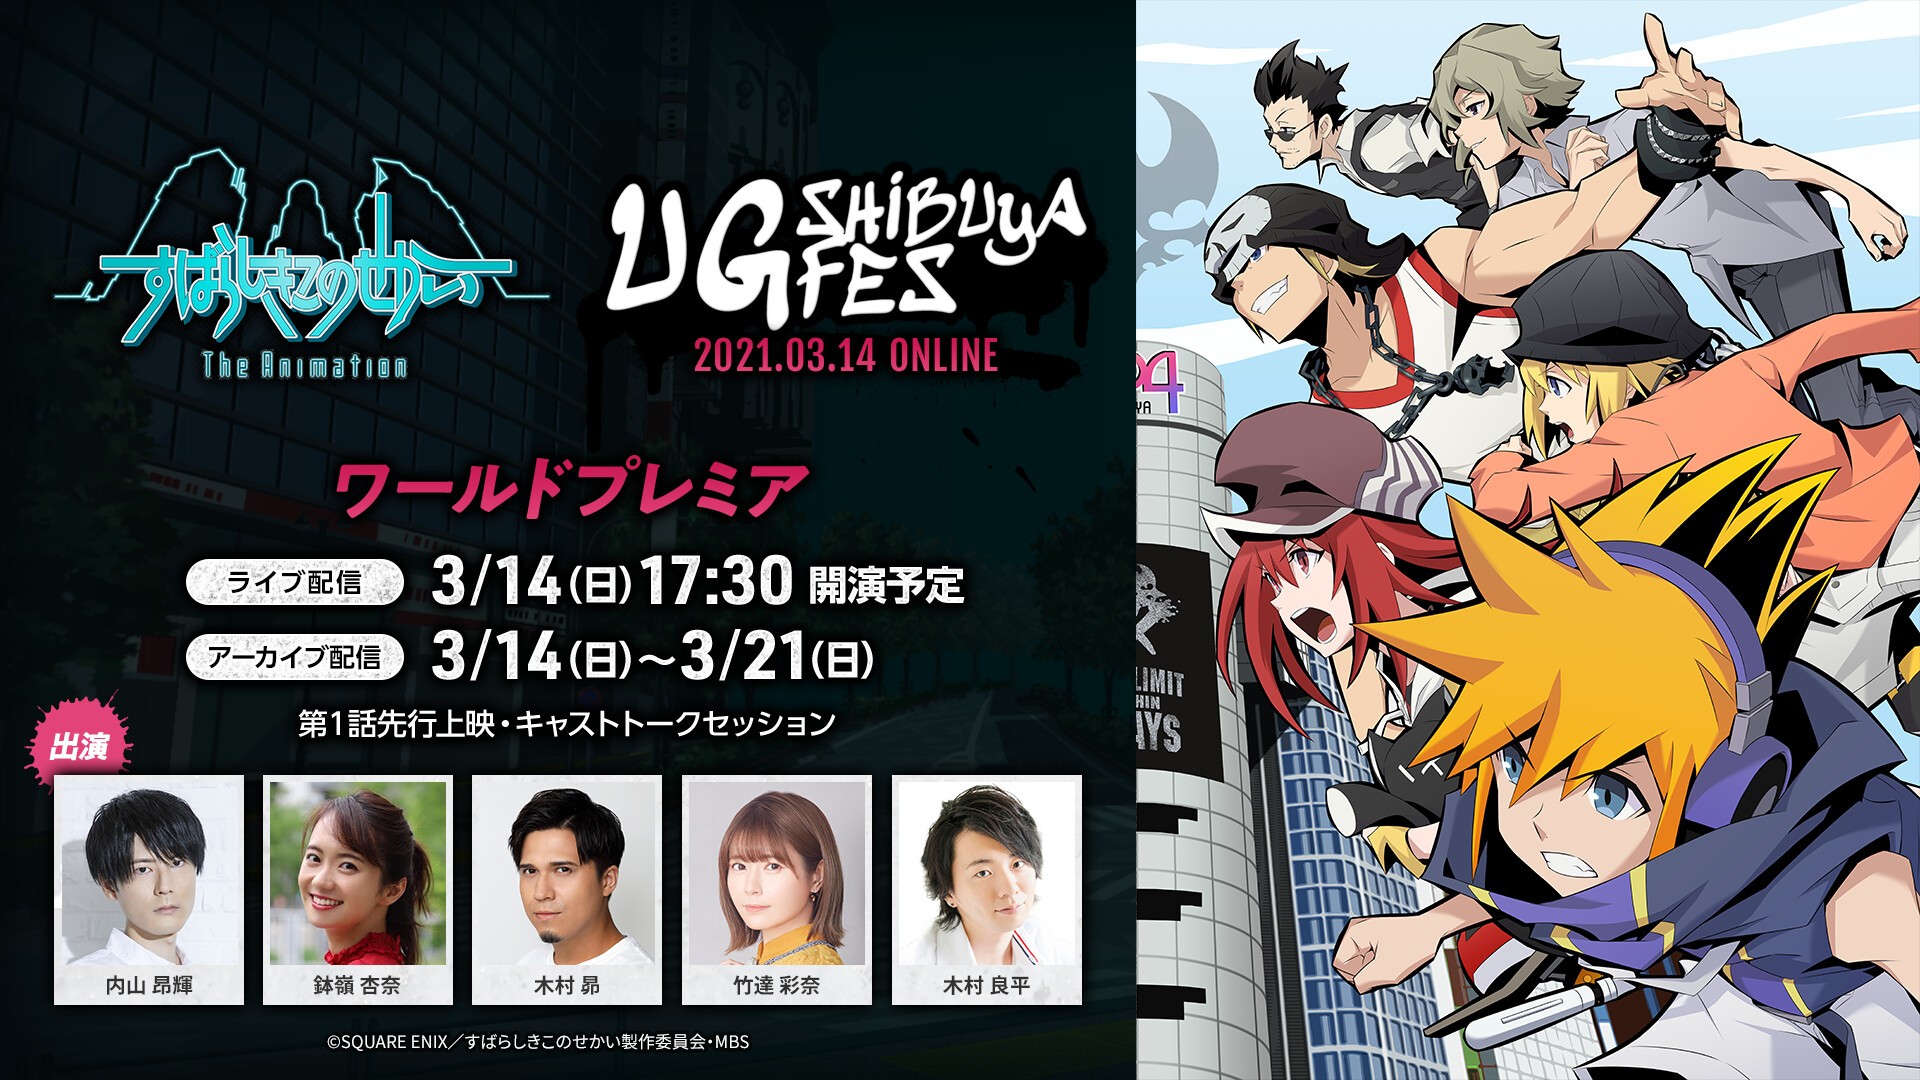 すばらしきこのせかい The Animation Ug Shibuya Fes ワールドプレミア 03 14 日 Online Streaming すばらしきこのせかい The Animation Tickets